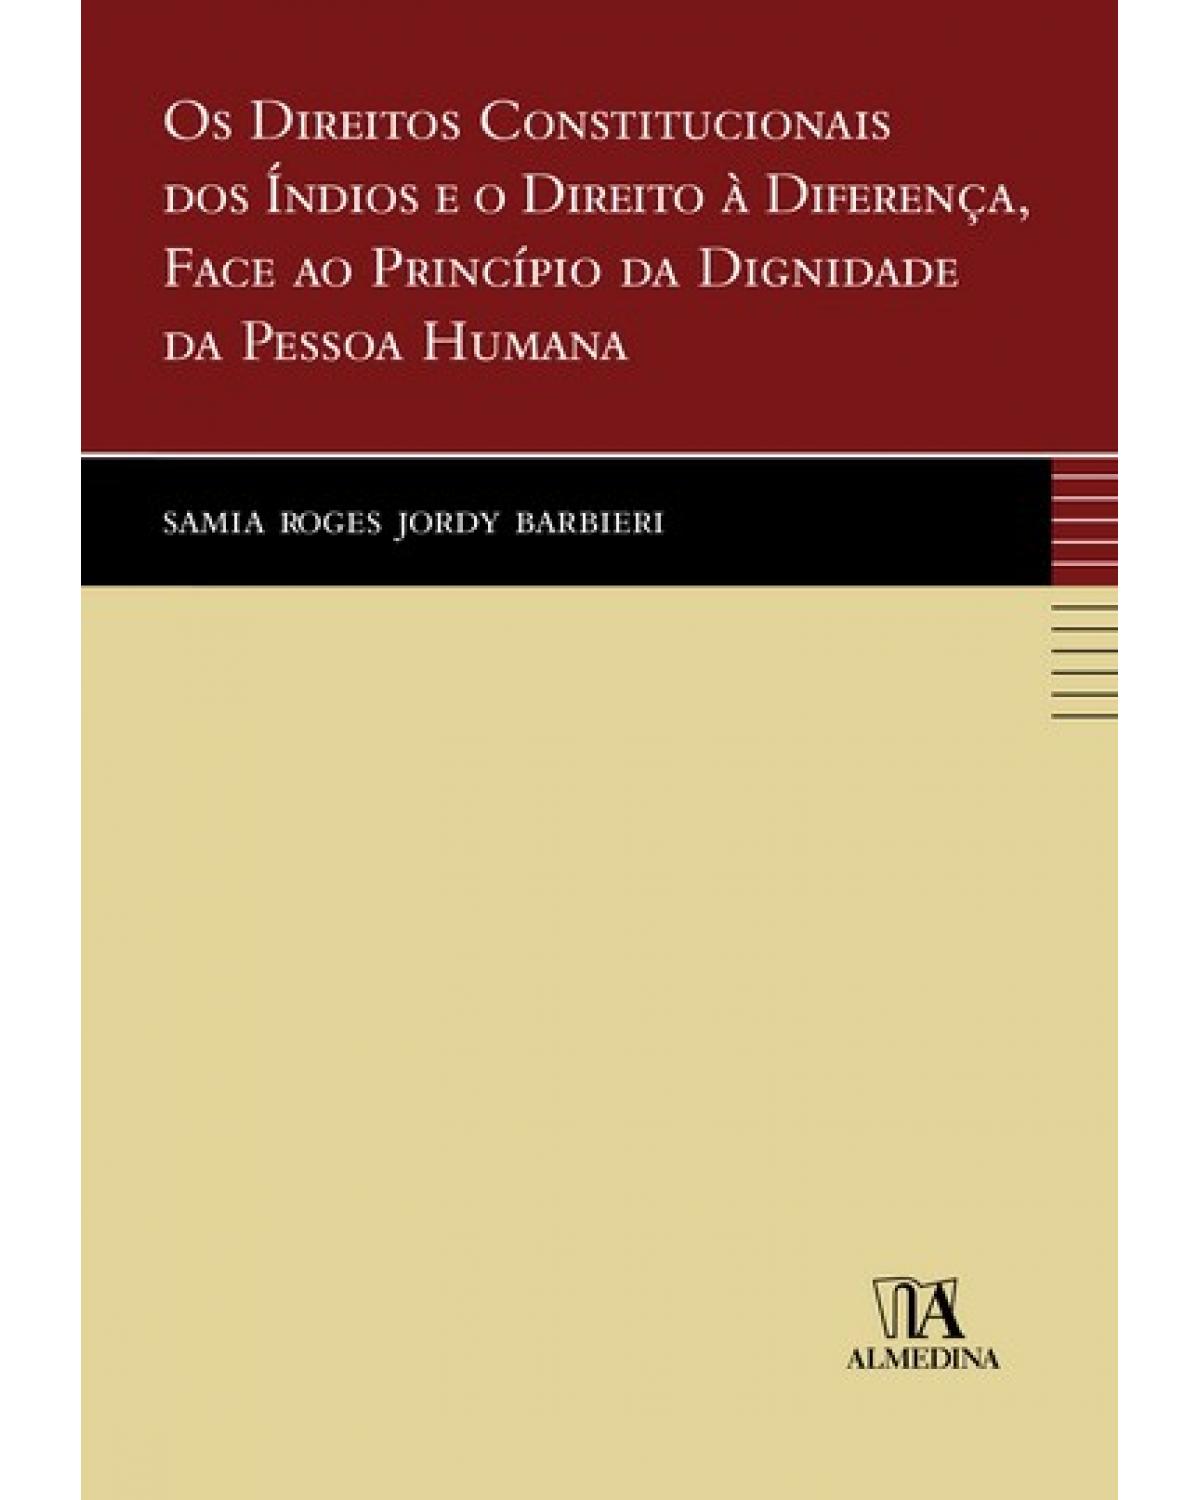 Os direitos constitucionais dos índios e o direito à diferença, face ao princípio da dignidade da pessoa humana - 1ª Edição | 2009